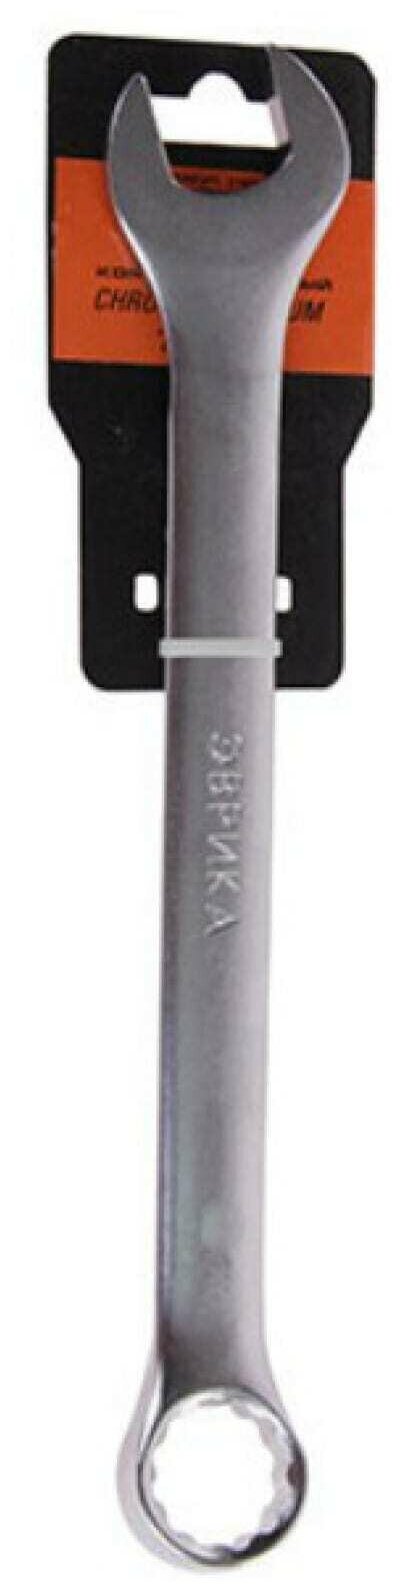 Ключ комбинированный 32мм ER-31032 (Chrome vanadium) на держателе сатинированный эврика